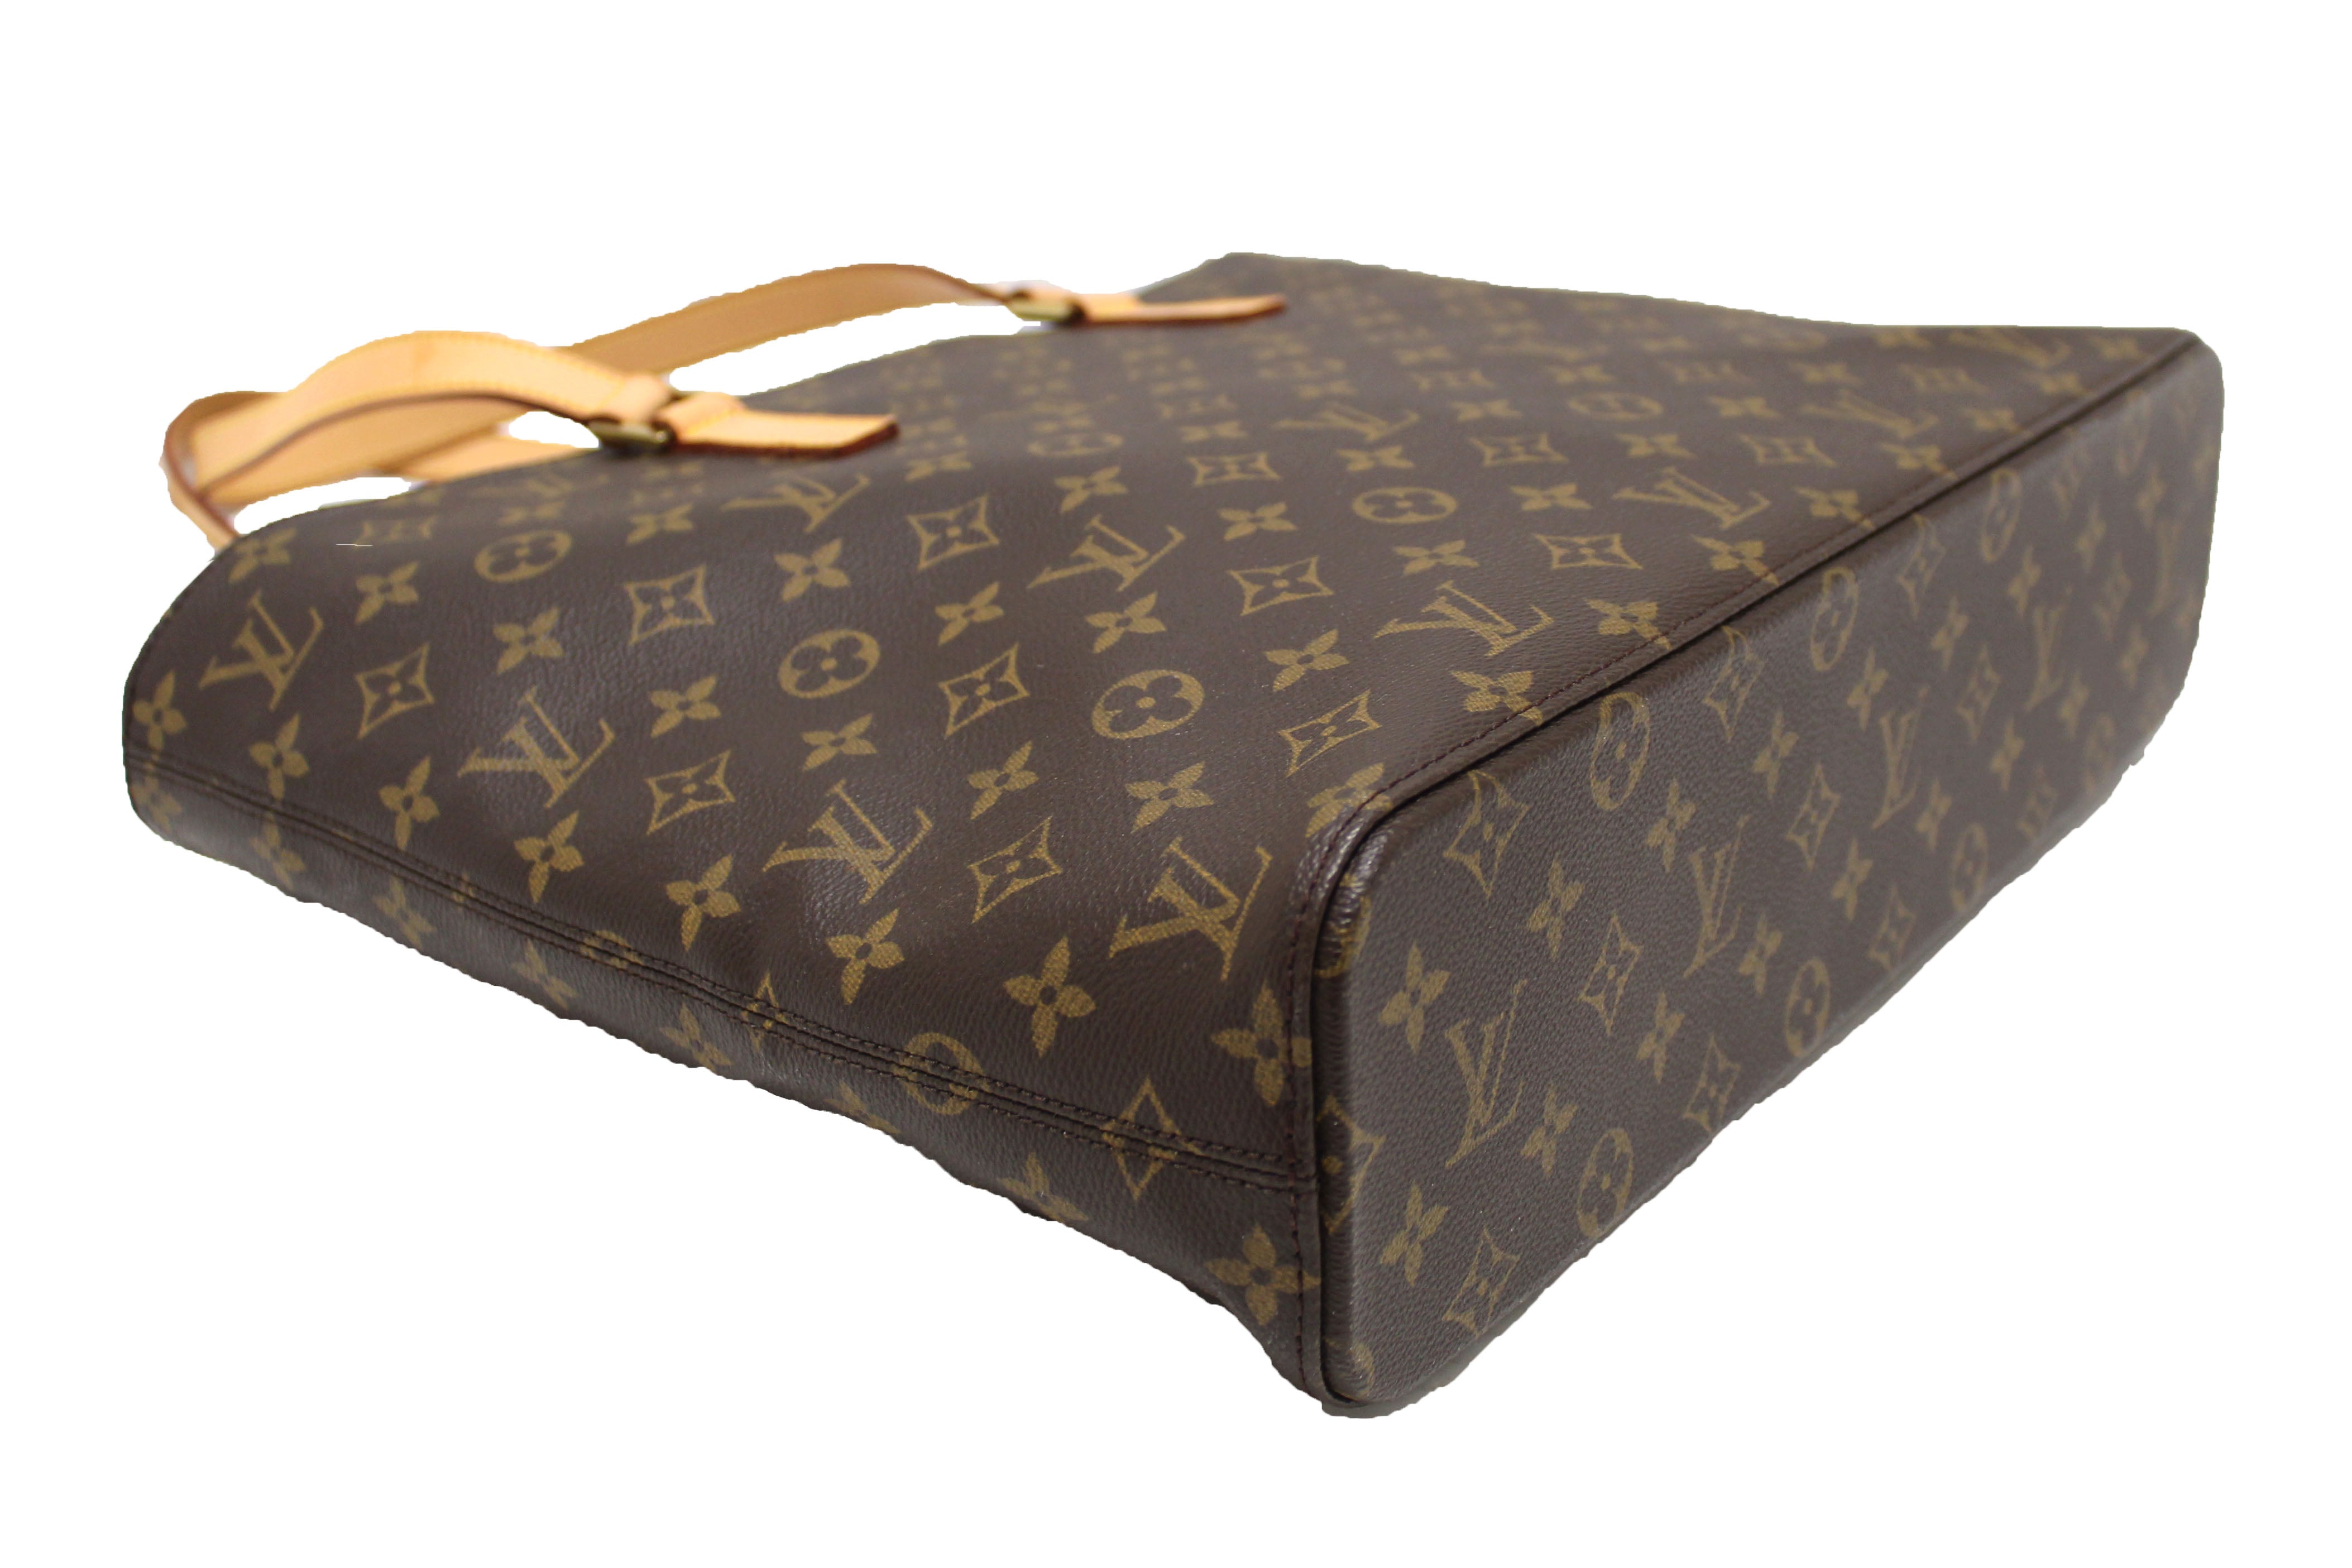 Louis Vuitton Luco Tote Bag – La Petite Boutique Winthrop